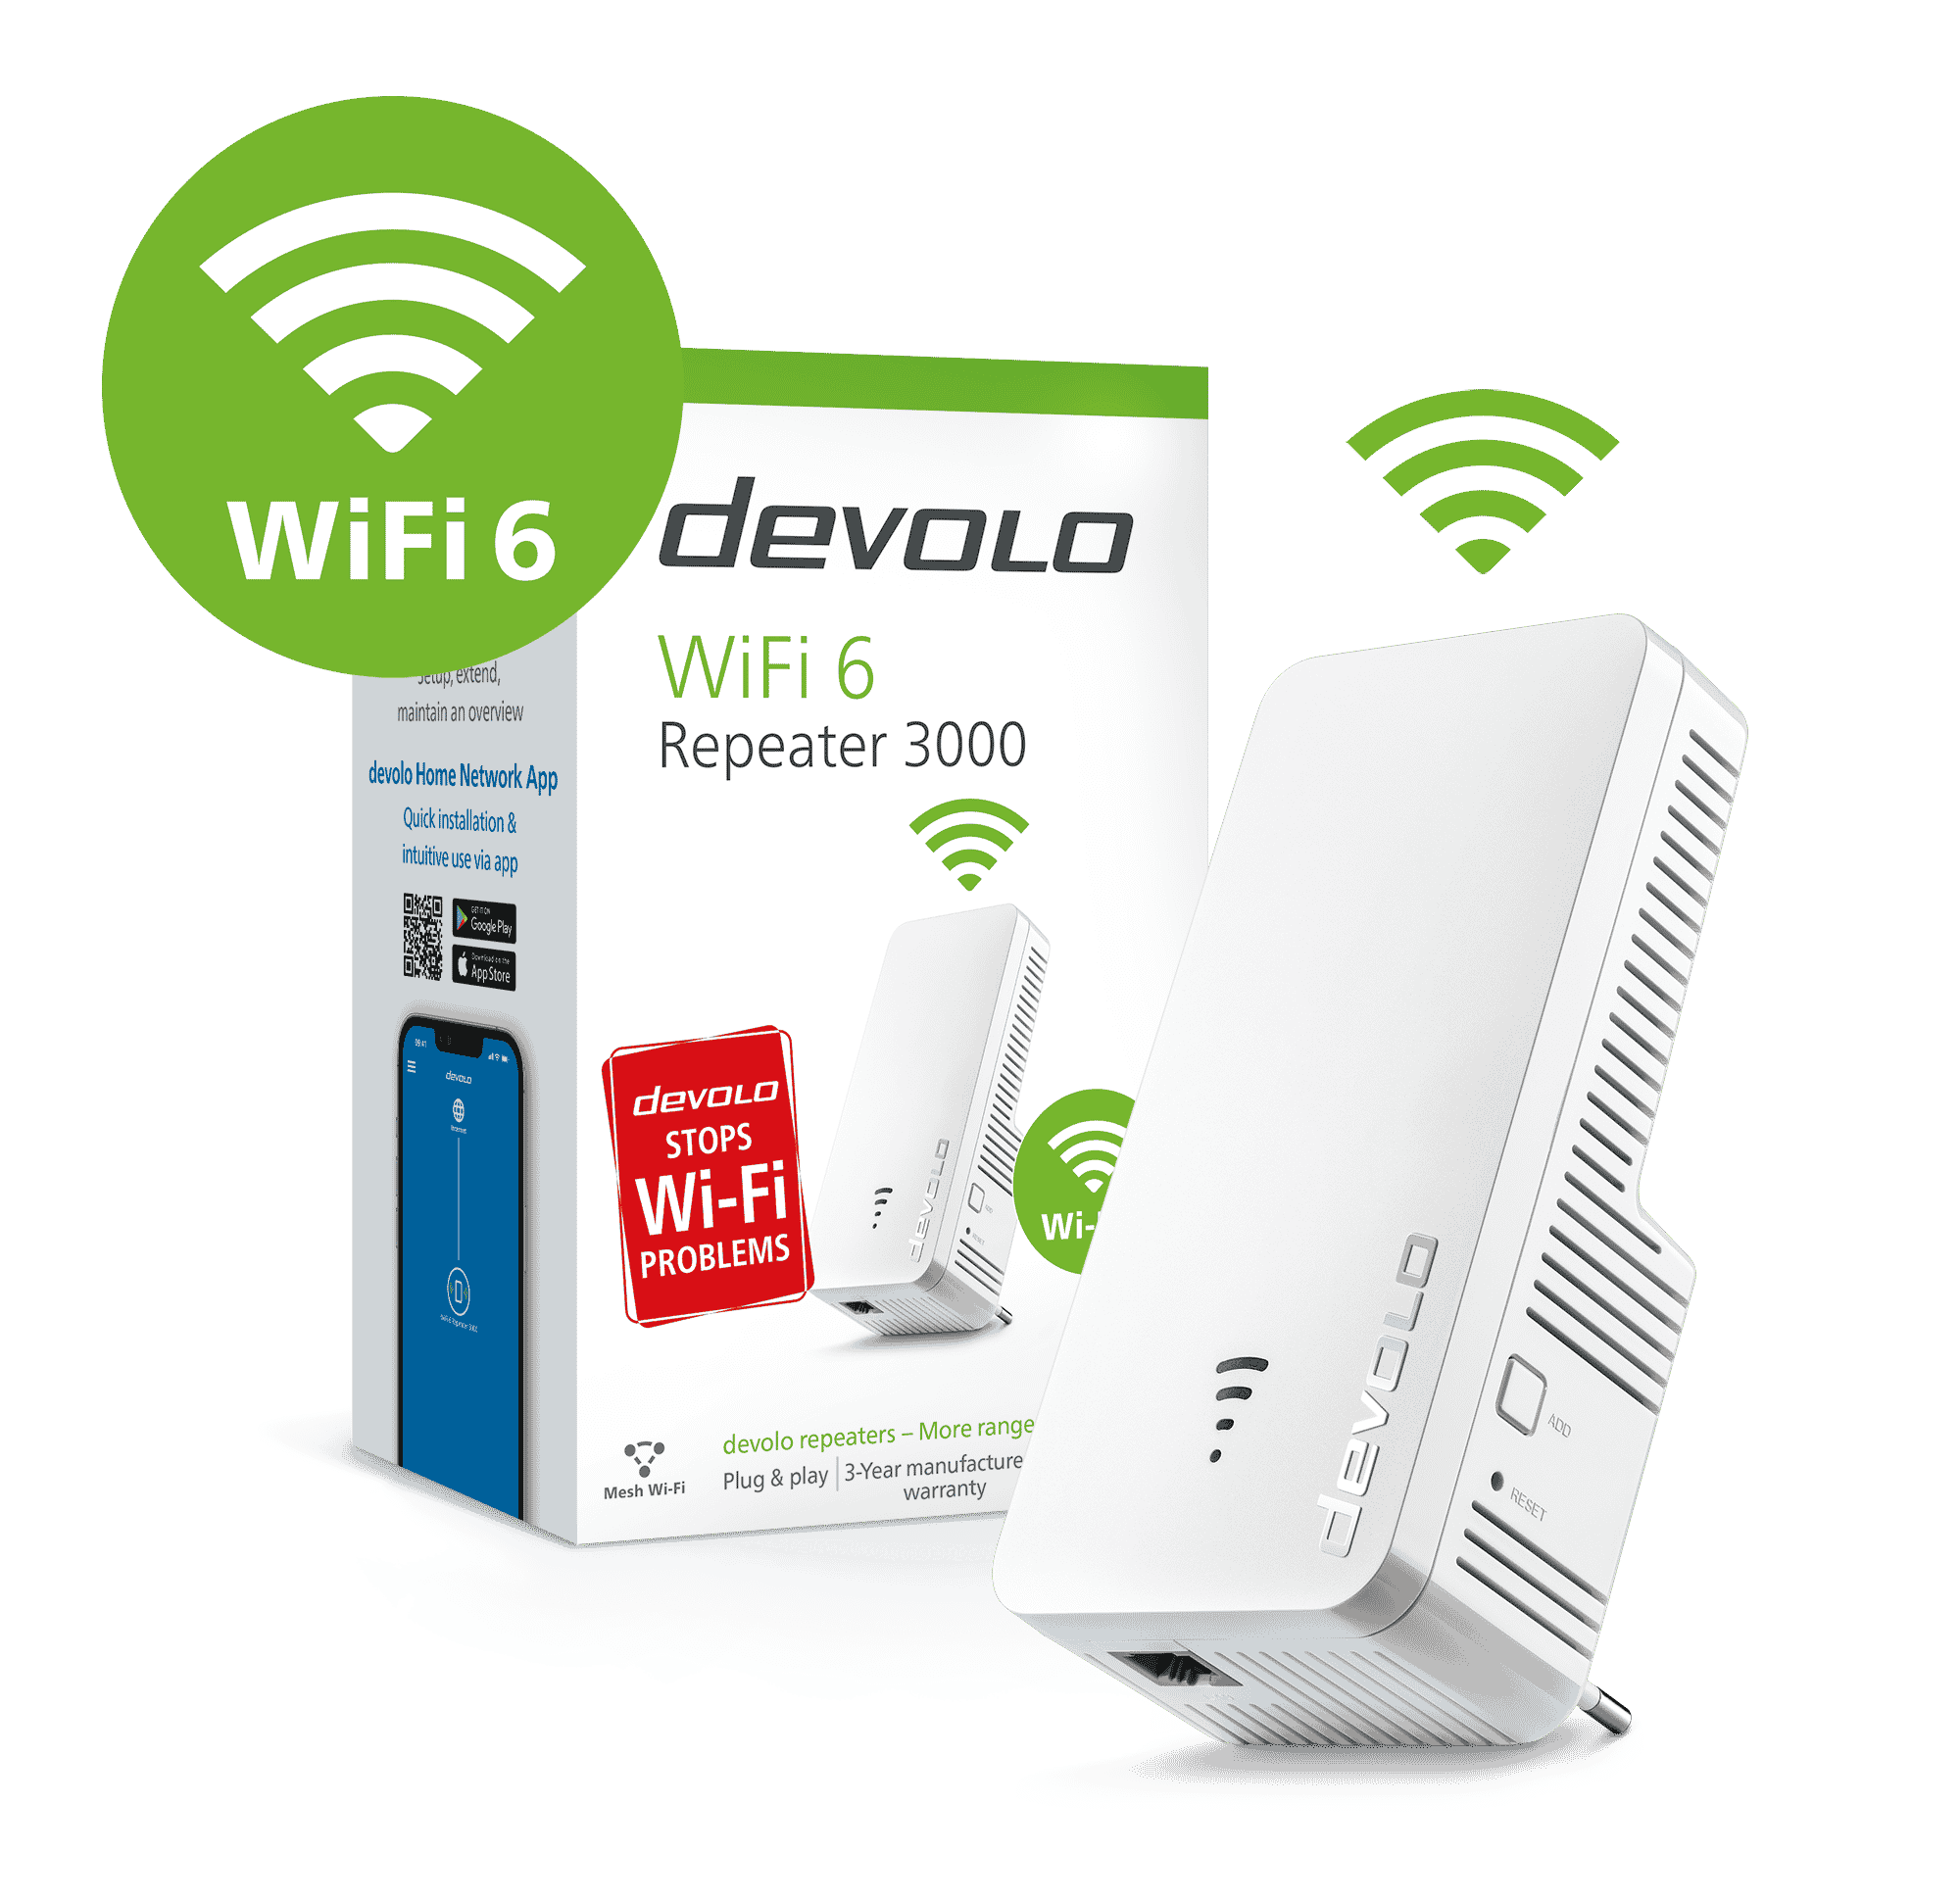  Devolo WiFi 5 Repeater 1200 : Electronics